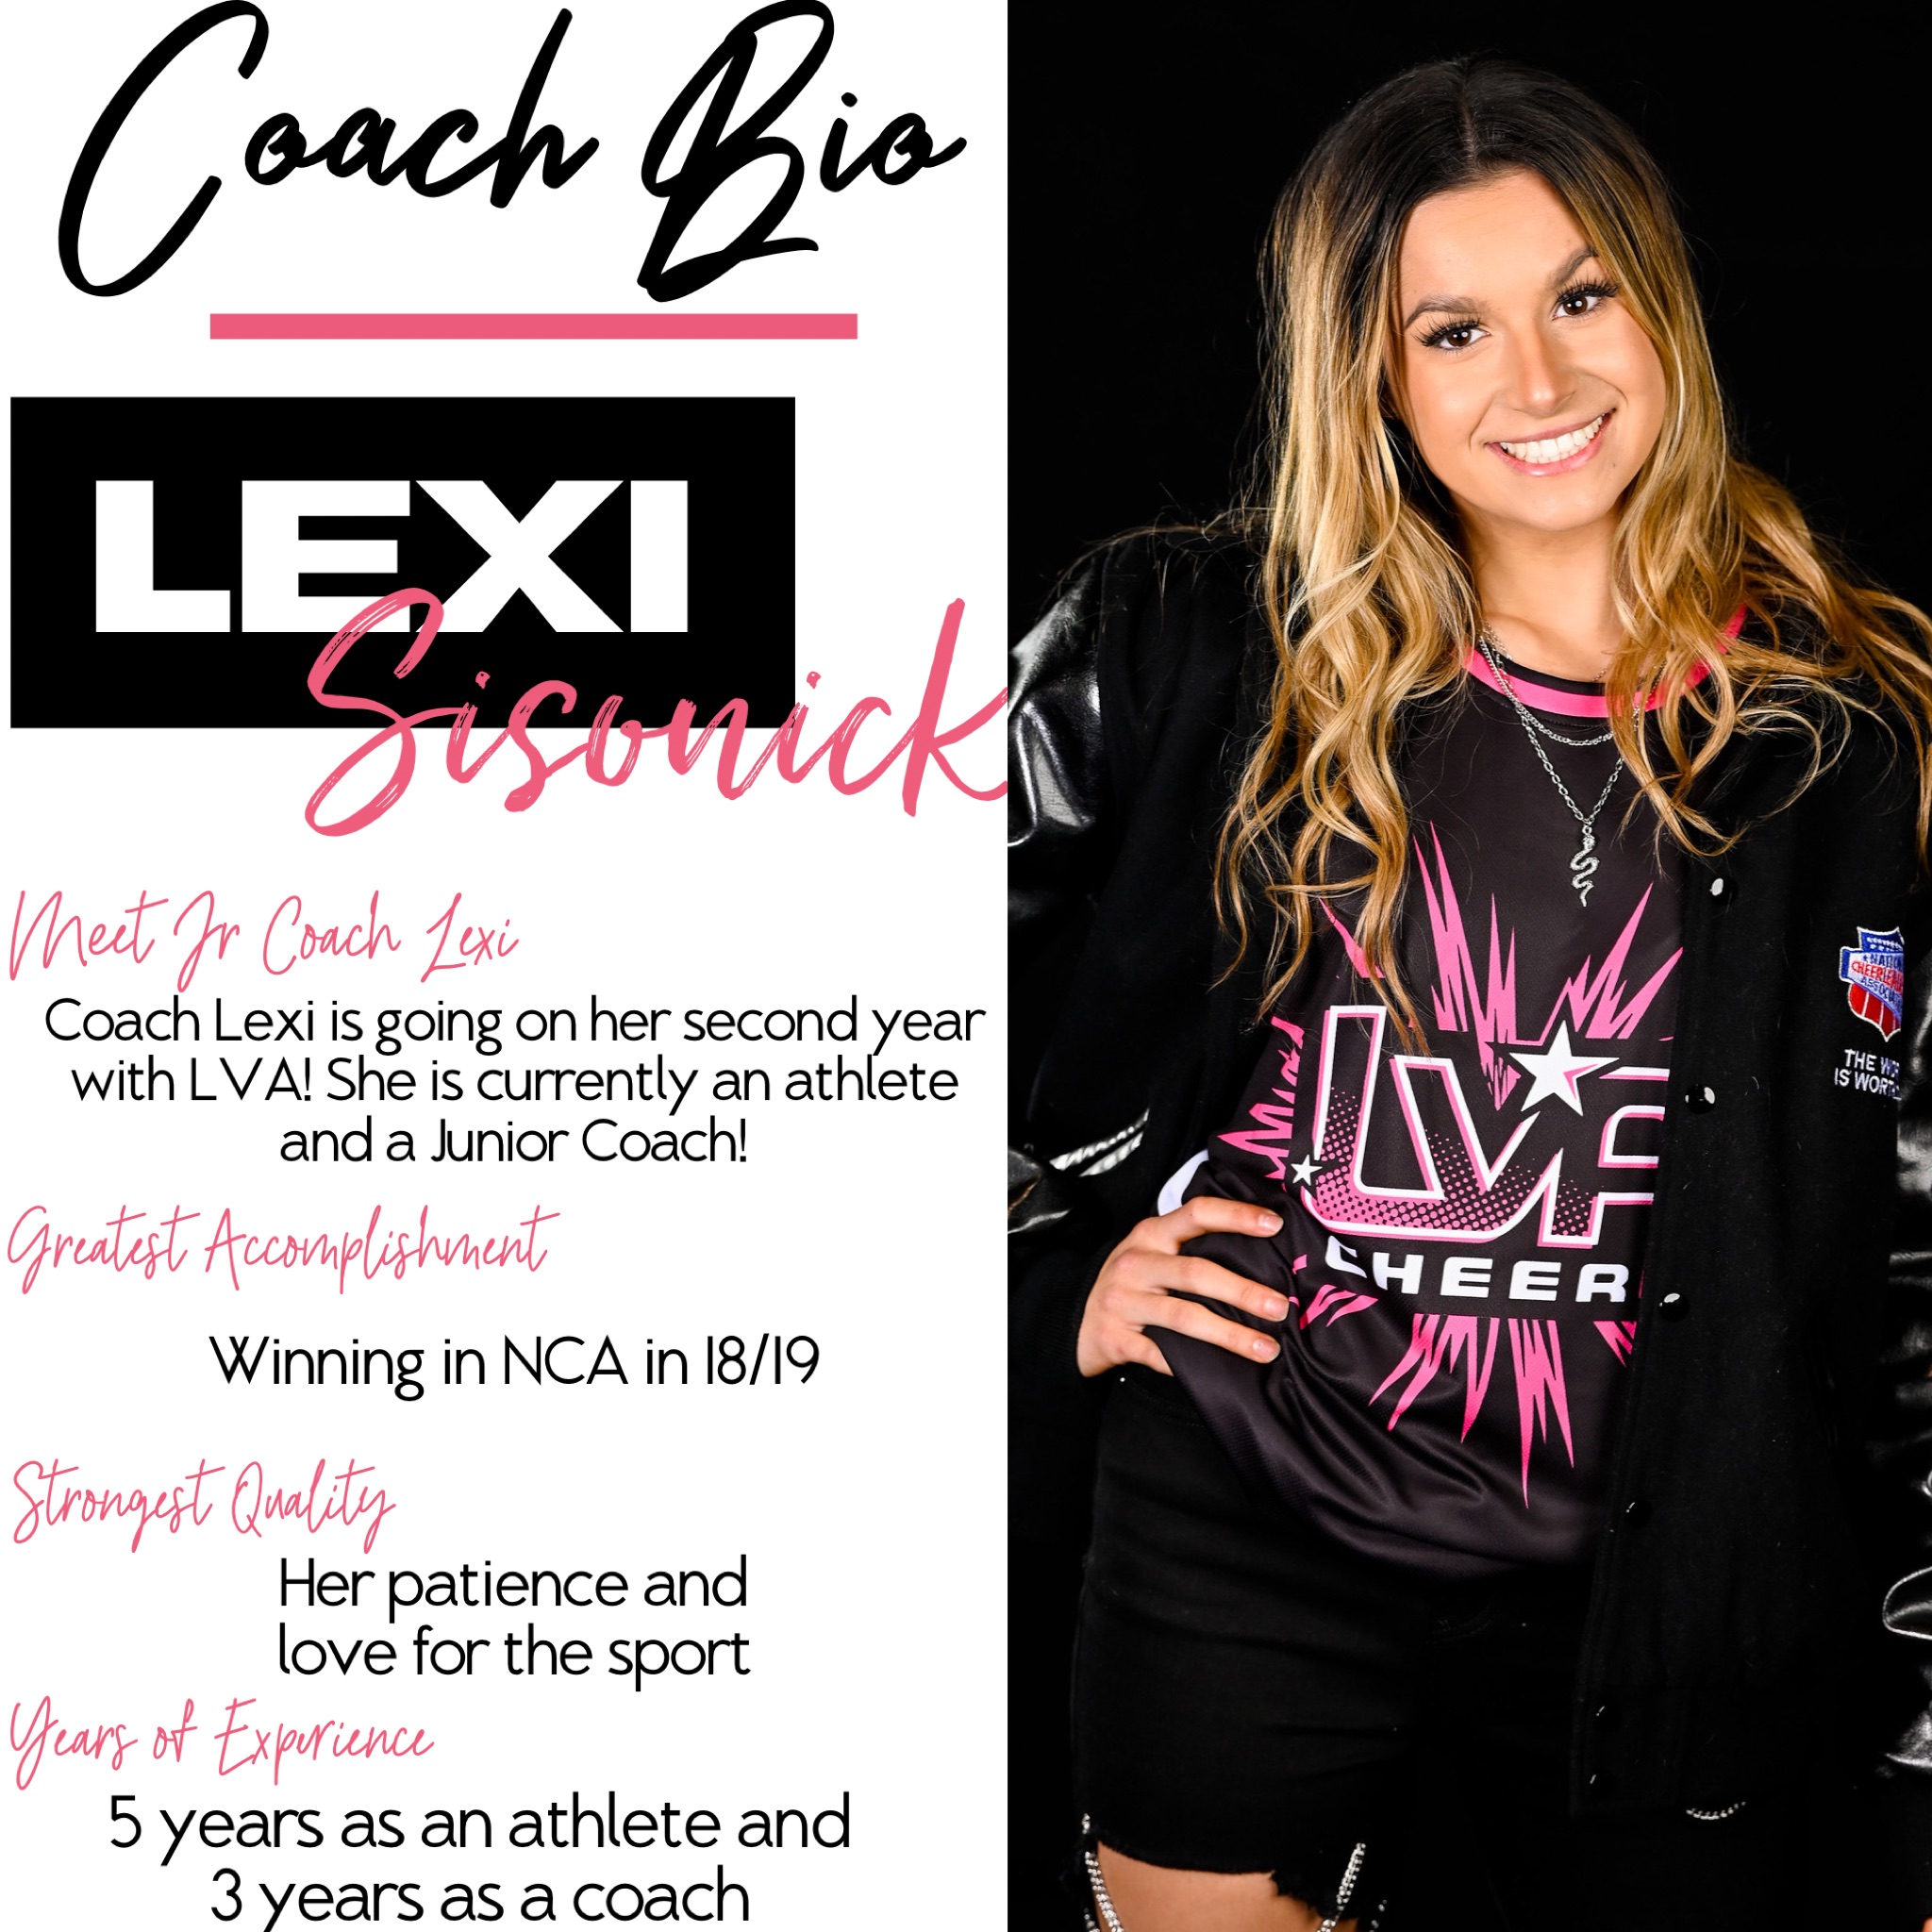 Coach Lexi